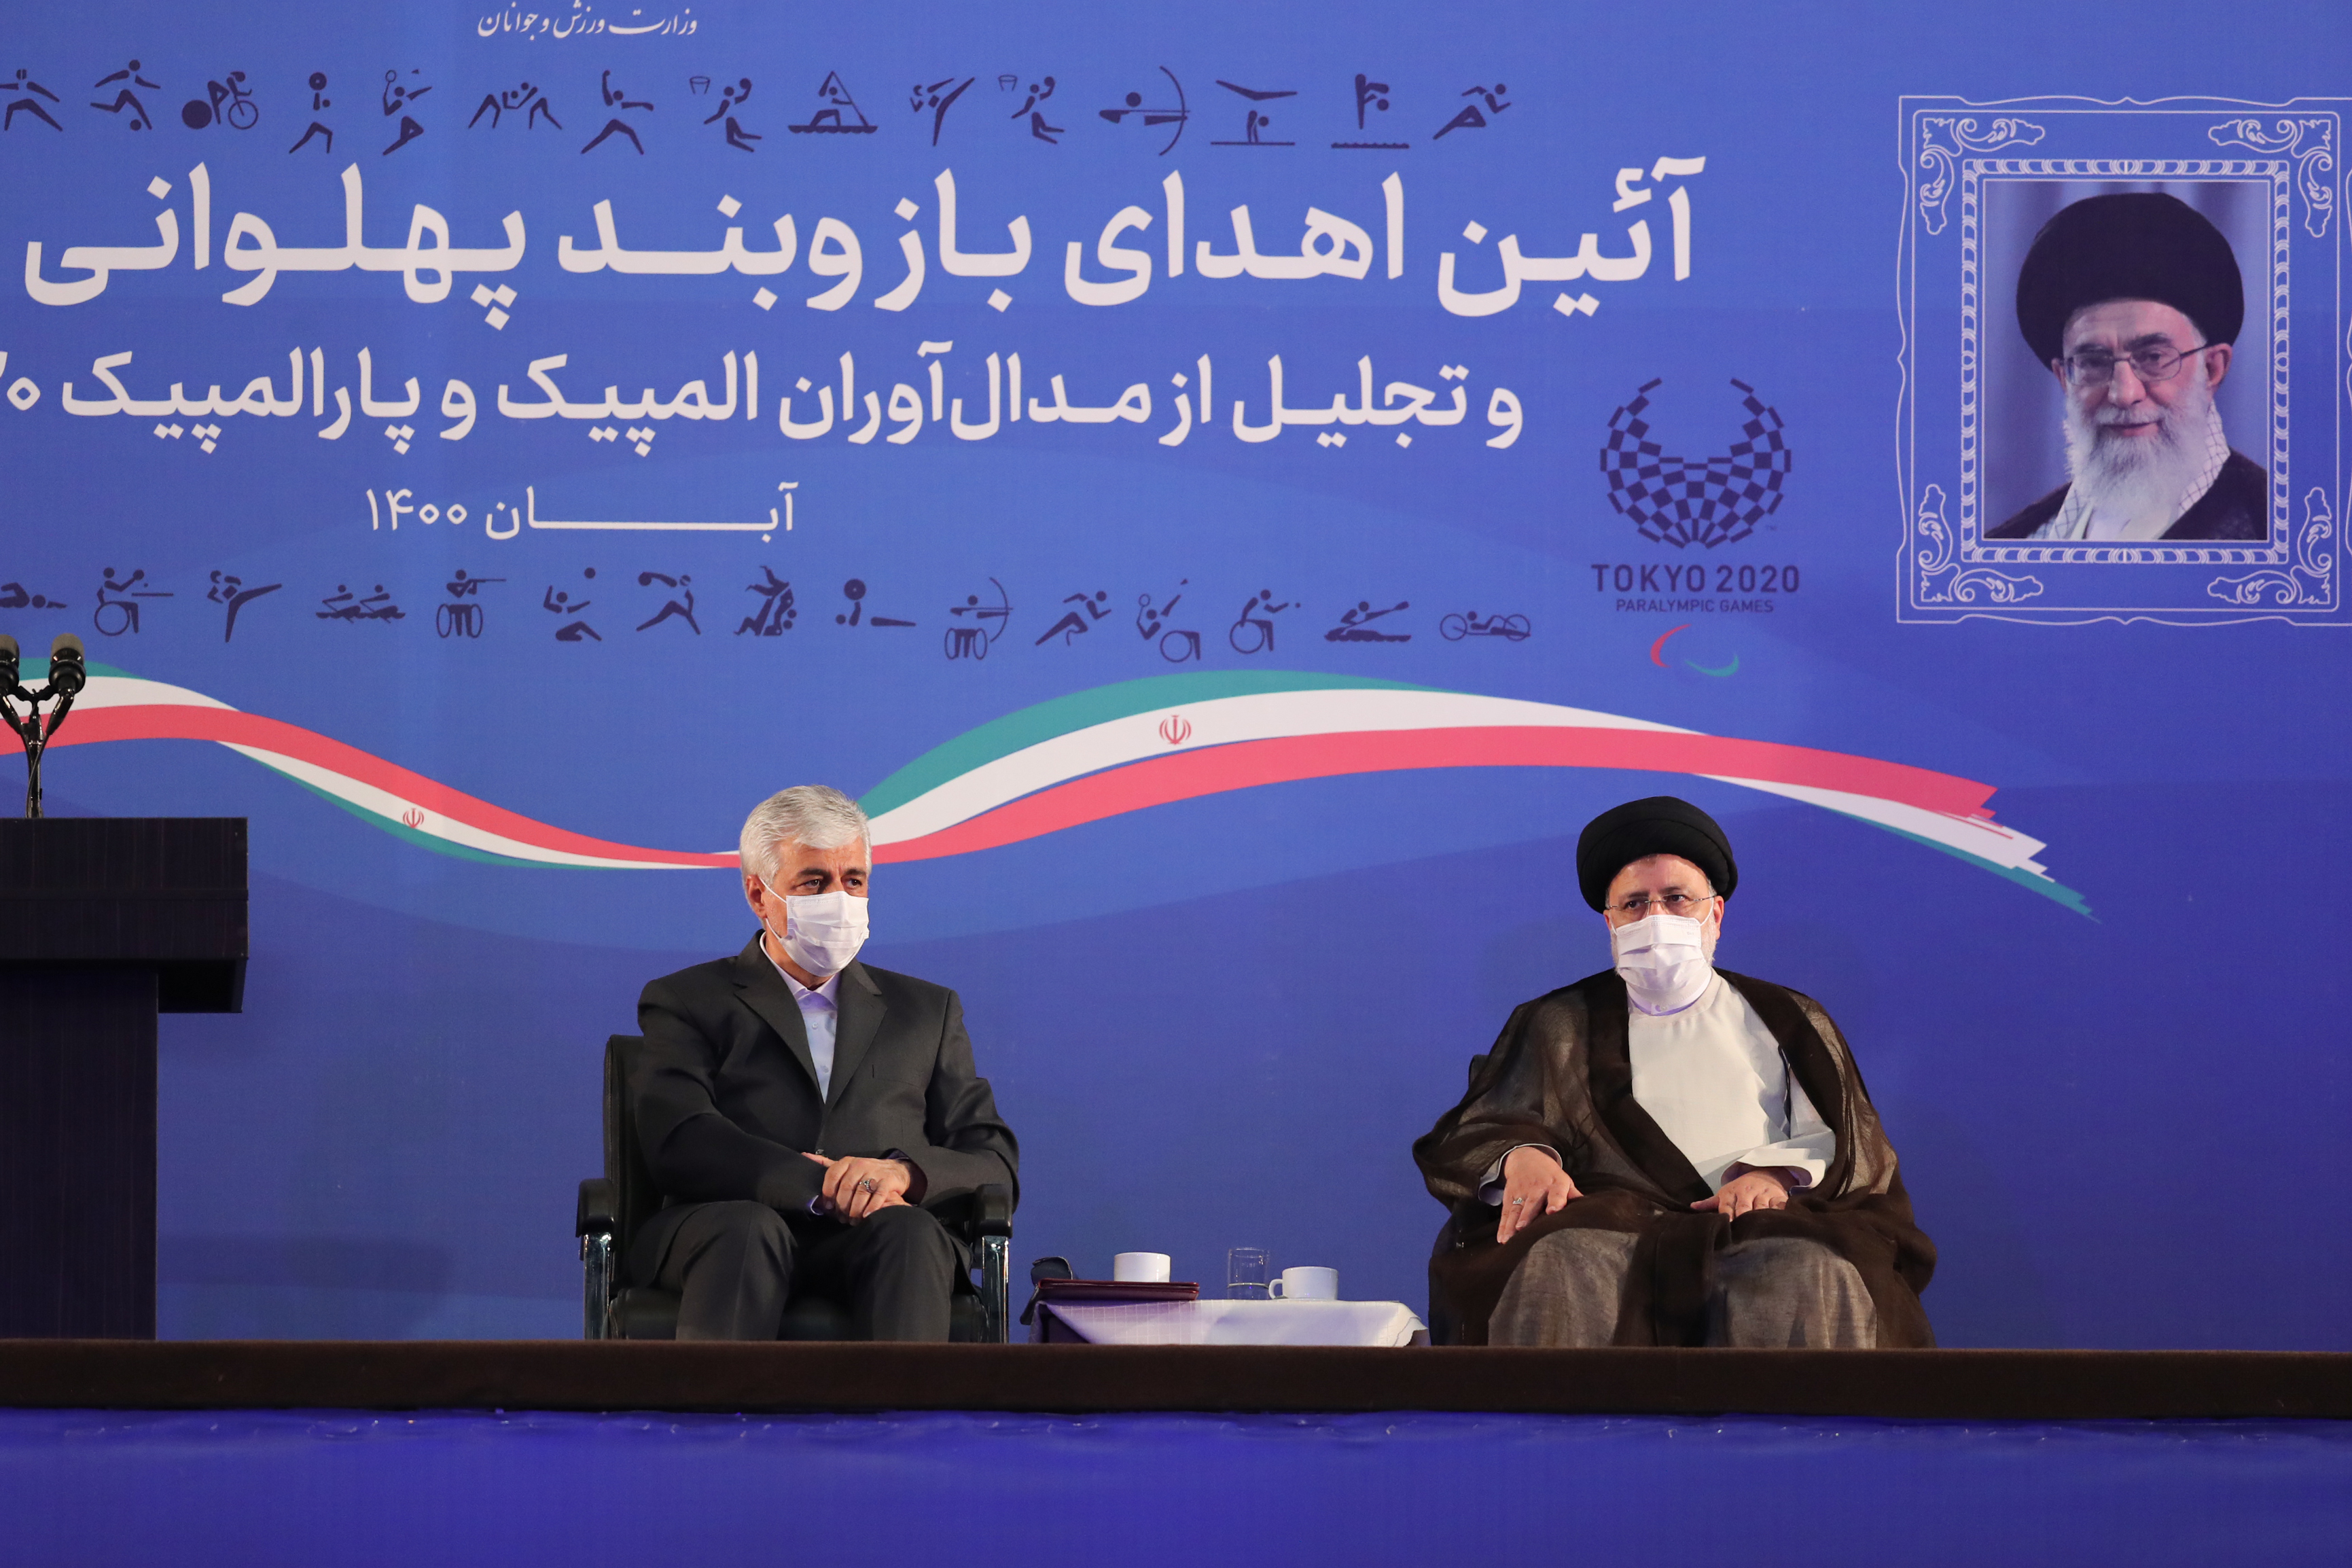 الرئيس الايراني يؤكد اهمية دعم الرياضيين المحترفين